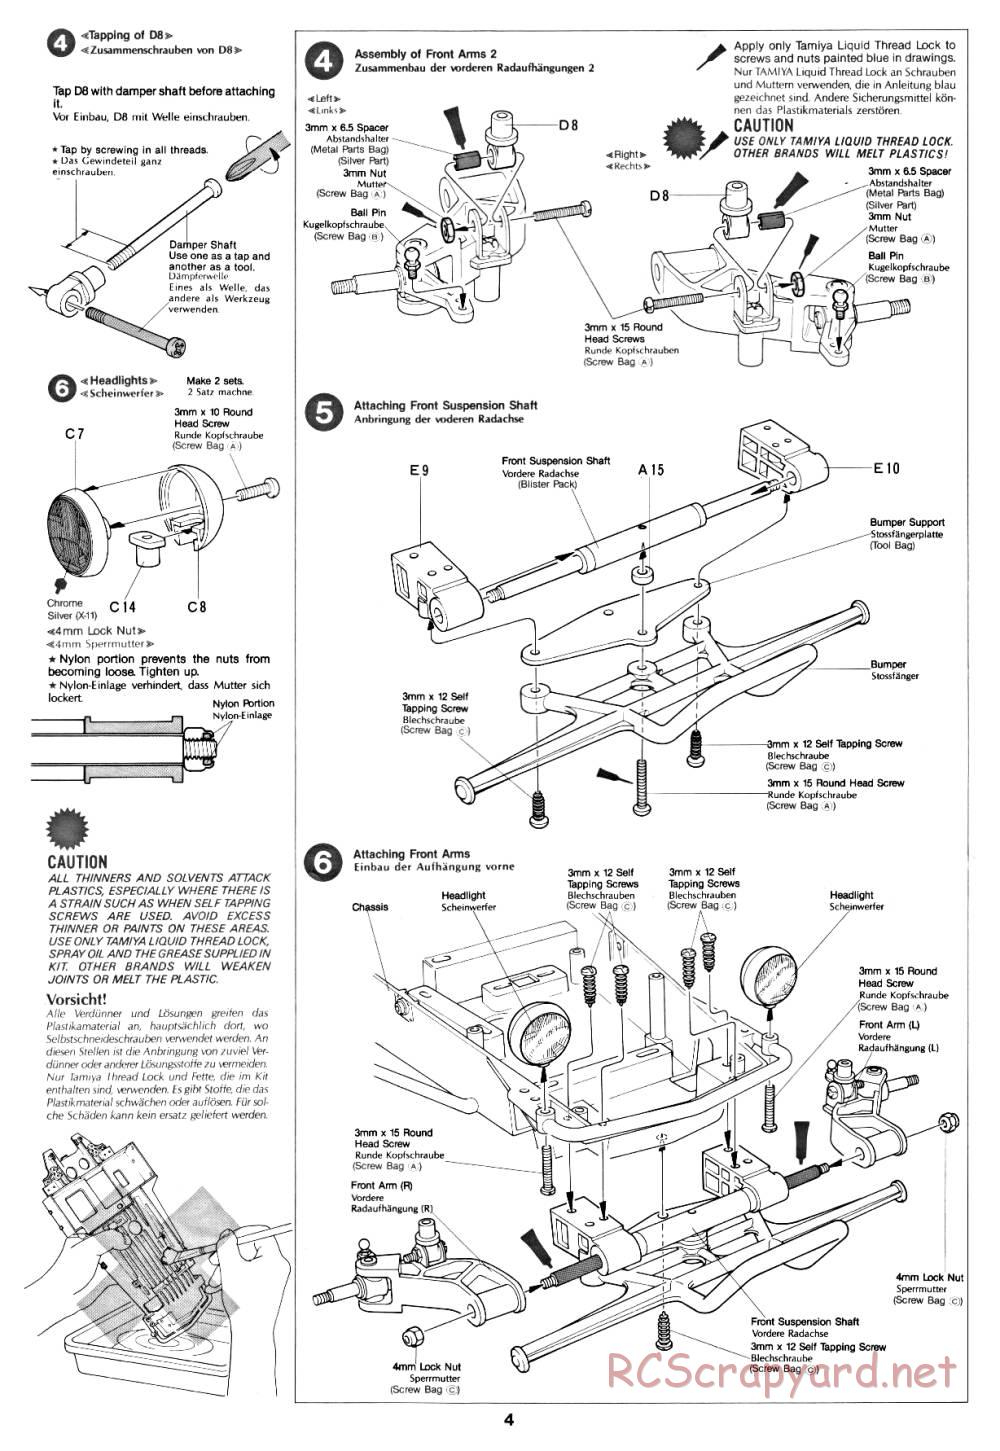 Tamiya - Fast Attack Vehicle - 58046 - Manual - Page 4